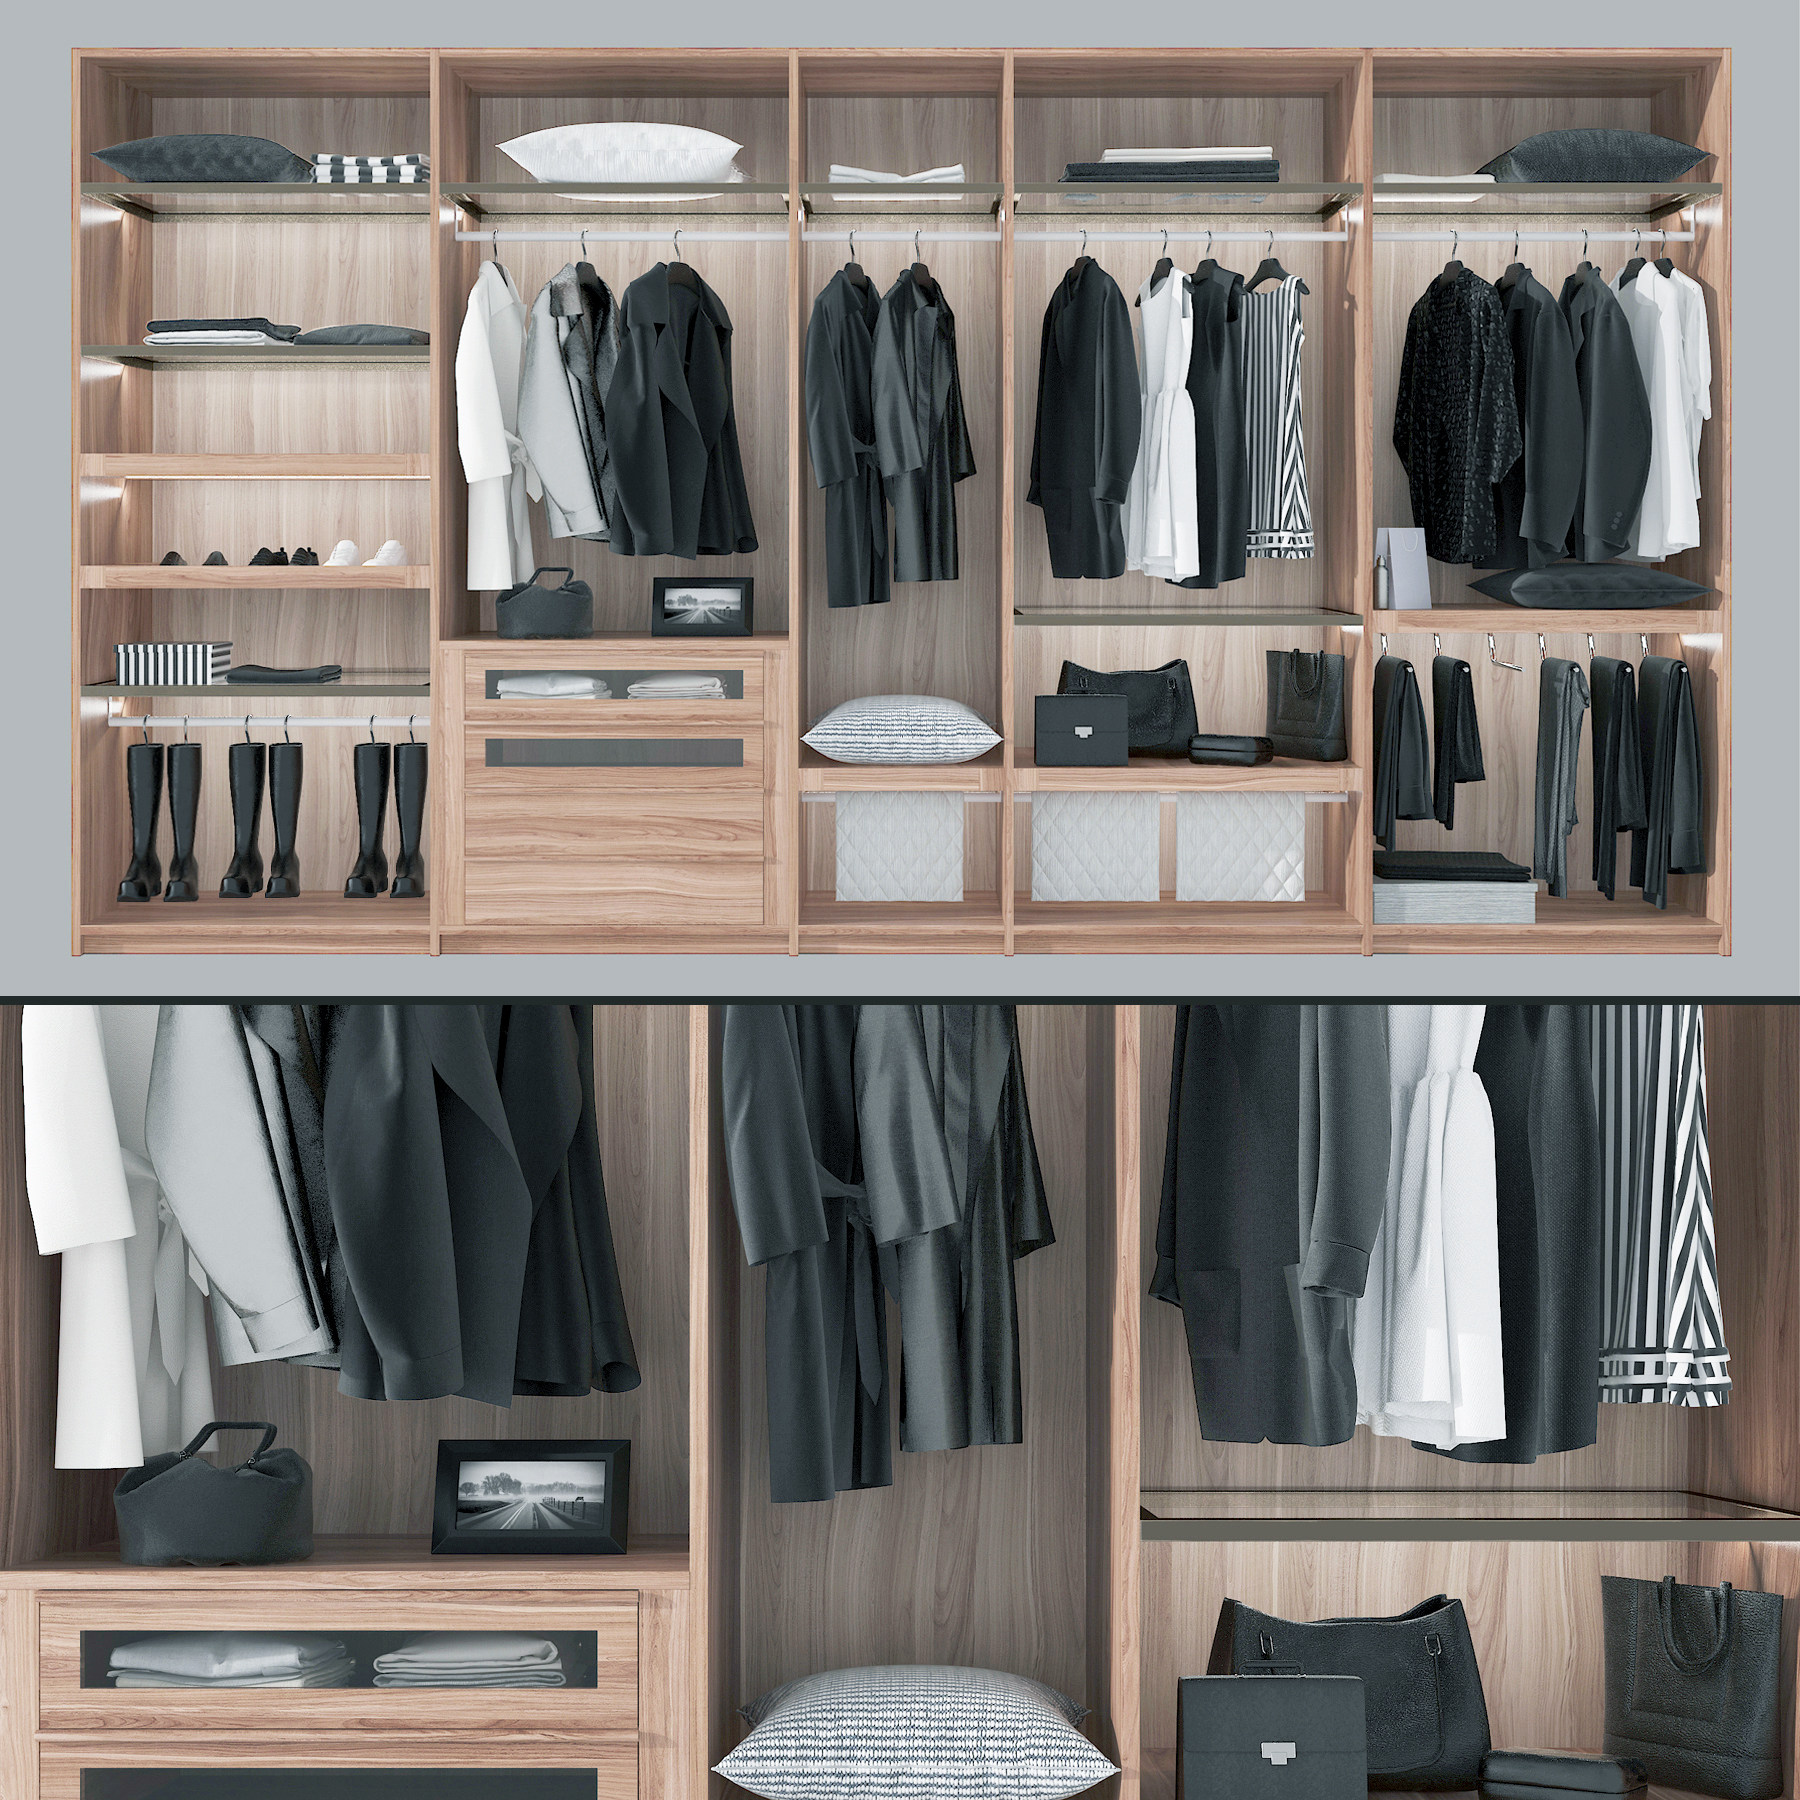 现代木质衣柜3d模型下载